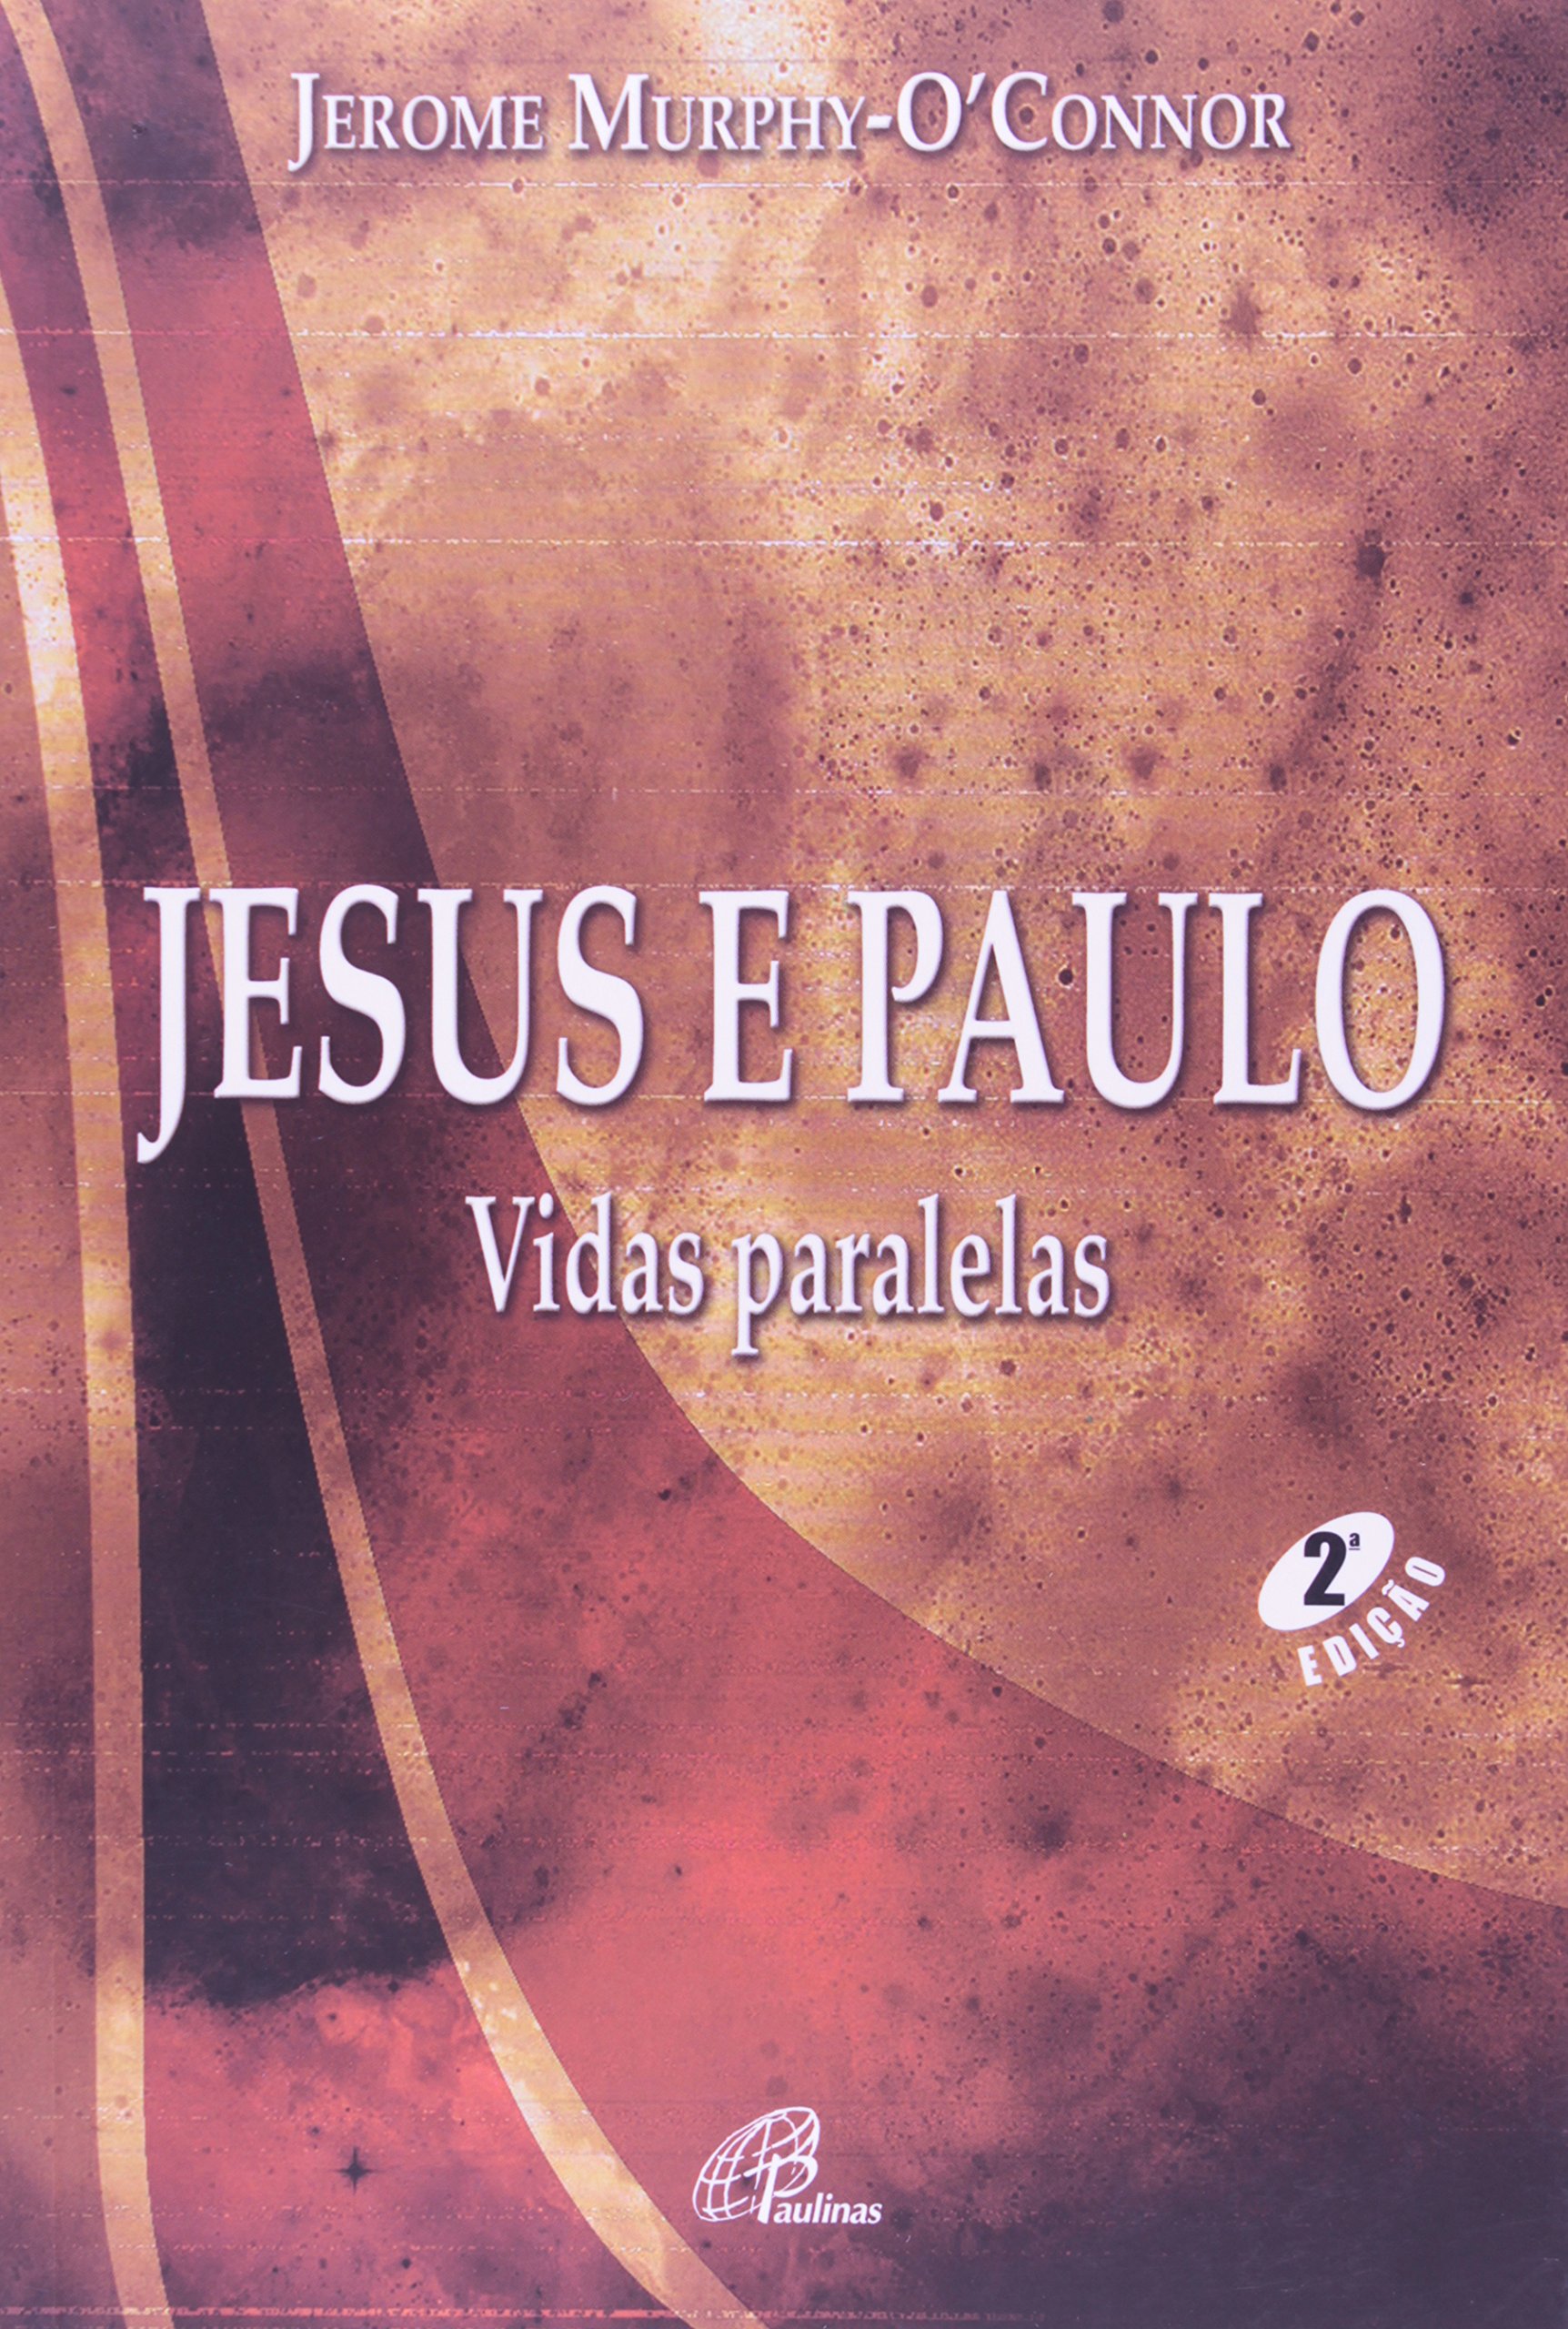 9788535622584 - JESUS E PAULO 222G EDITORA PAULINAS